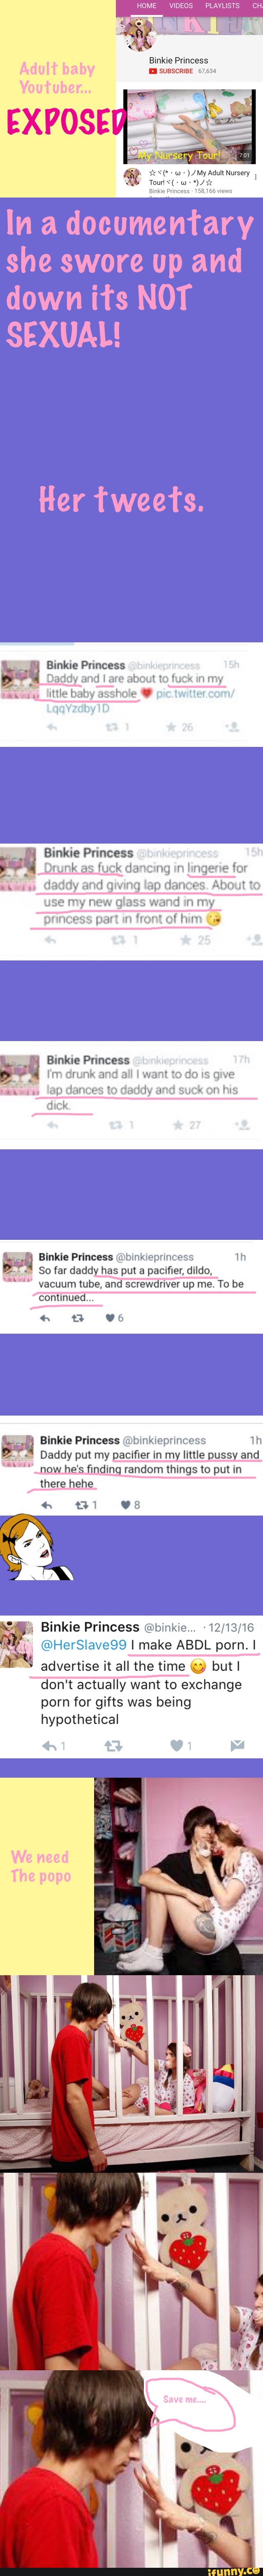 Binkie princess website